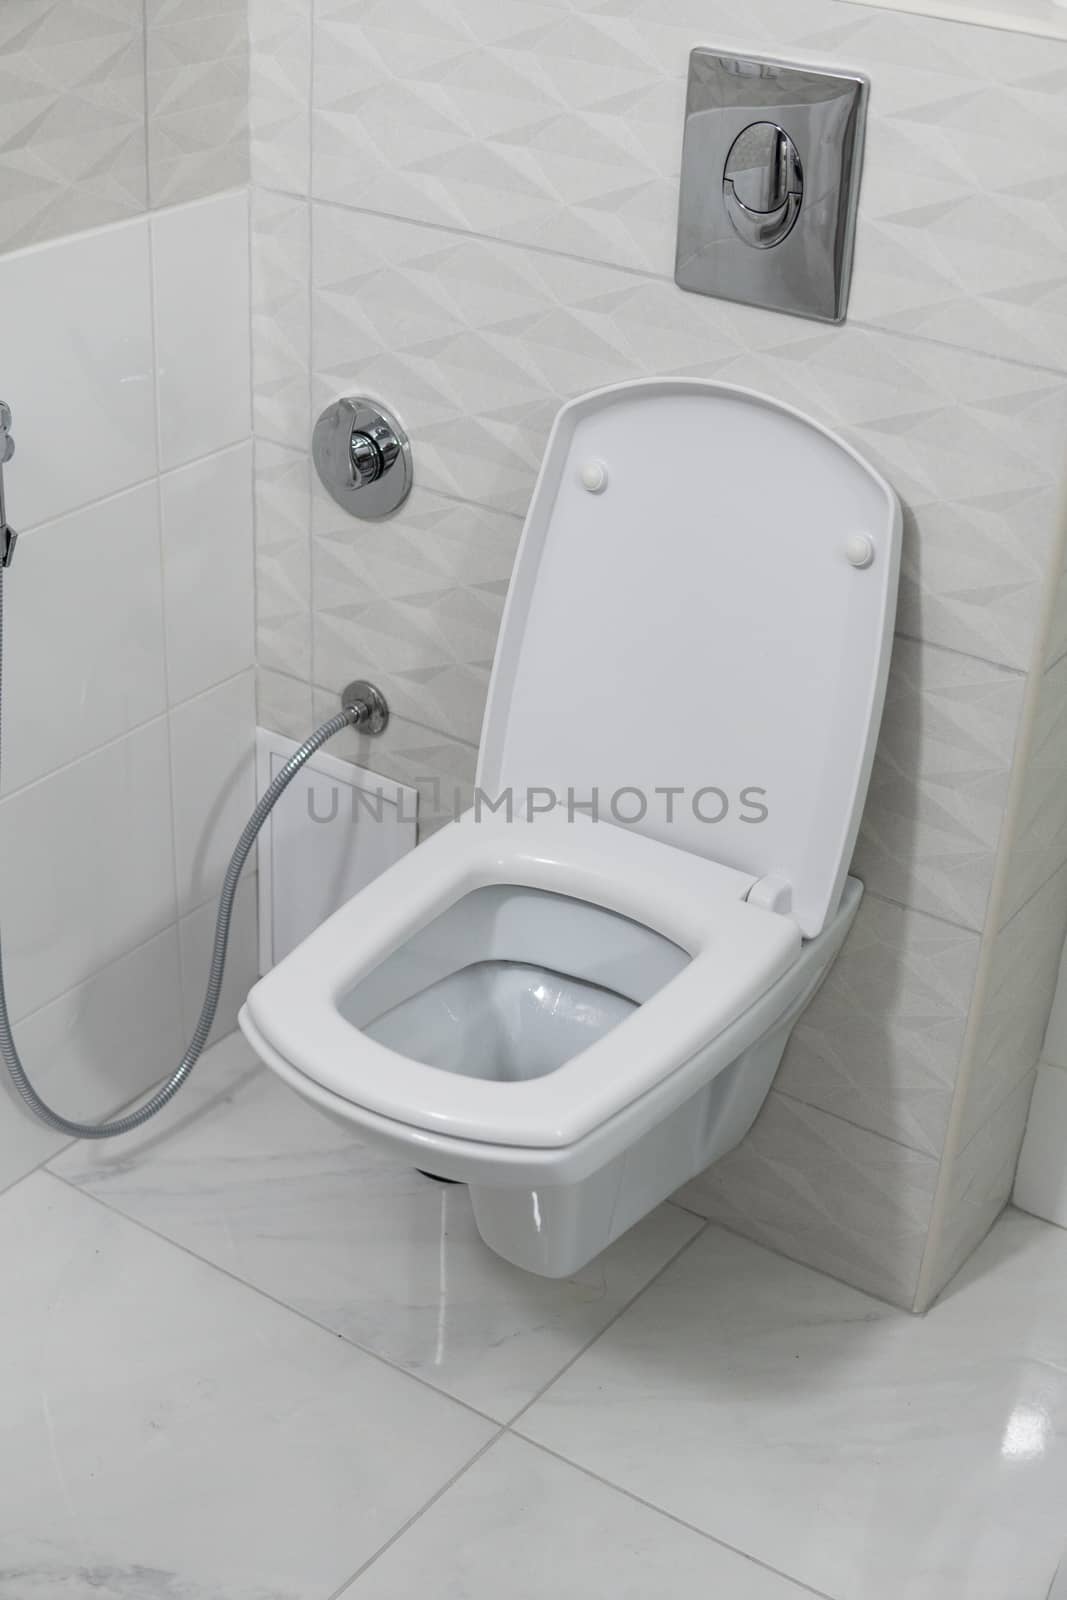 White toilet bowl in modern light bathroom interior